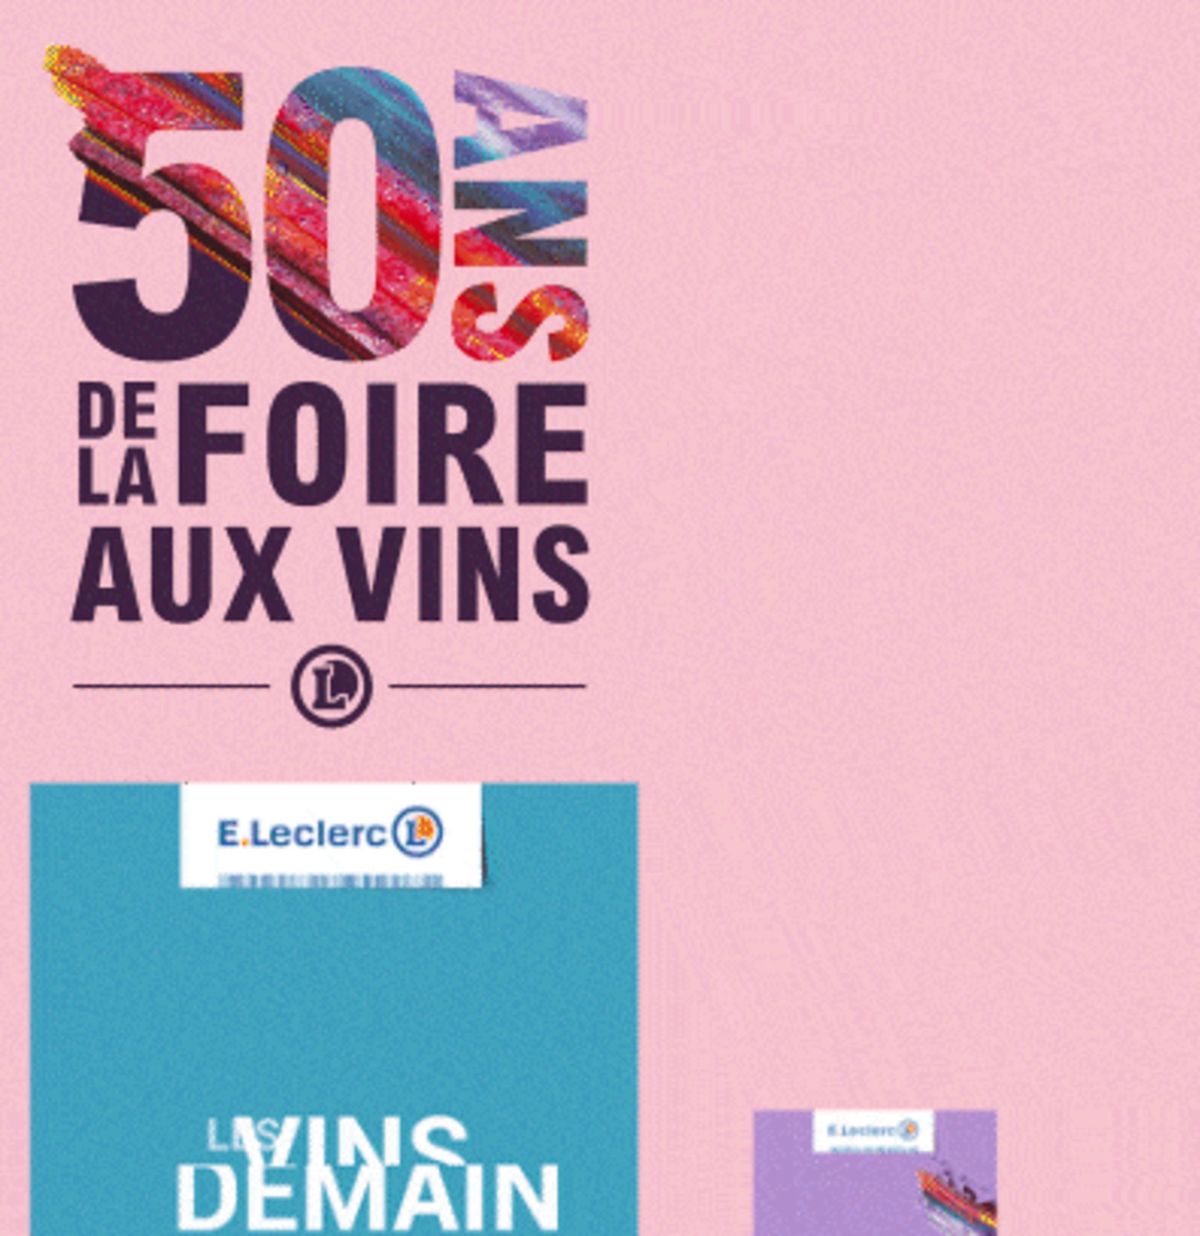 Catalogue Foire Aux Vins - Mixte, page 01151